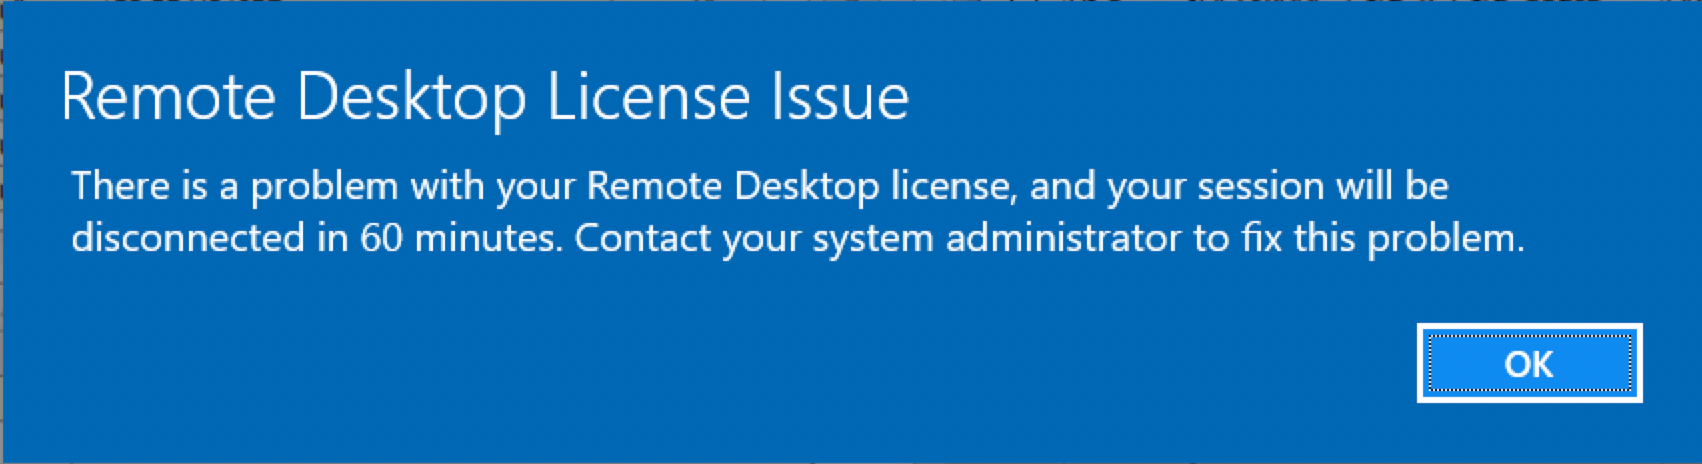 Remote Desktop License Problem 60 Minutes